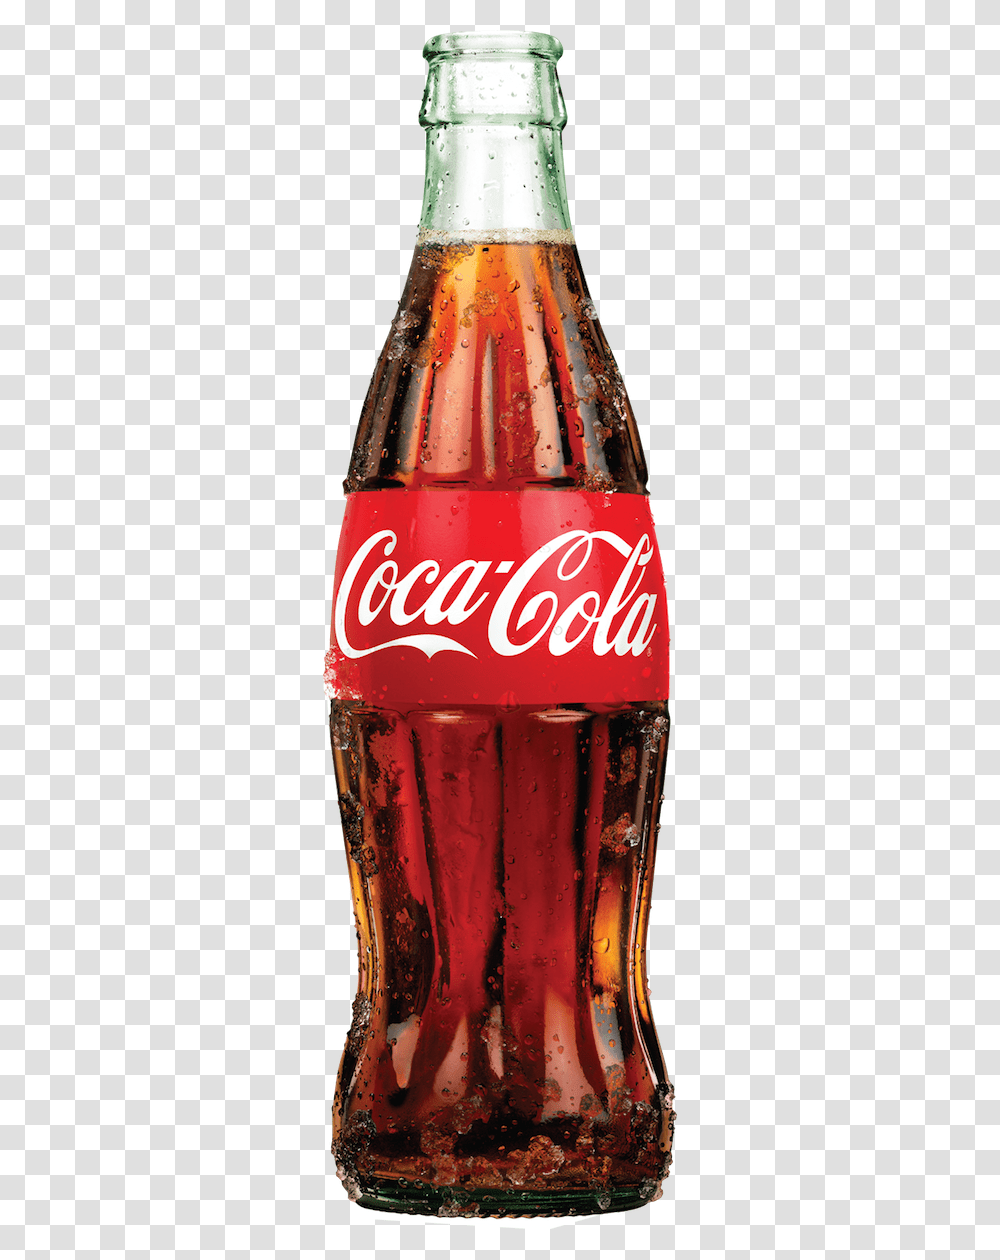 Coca Cola Iconic Bottle, Coke, Beverage, Drink, Soda Transparent Png